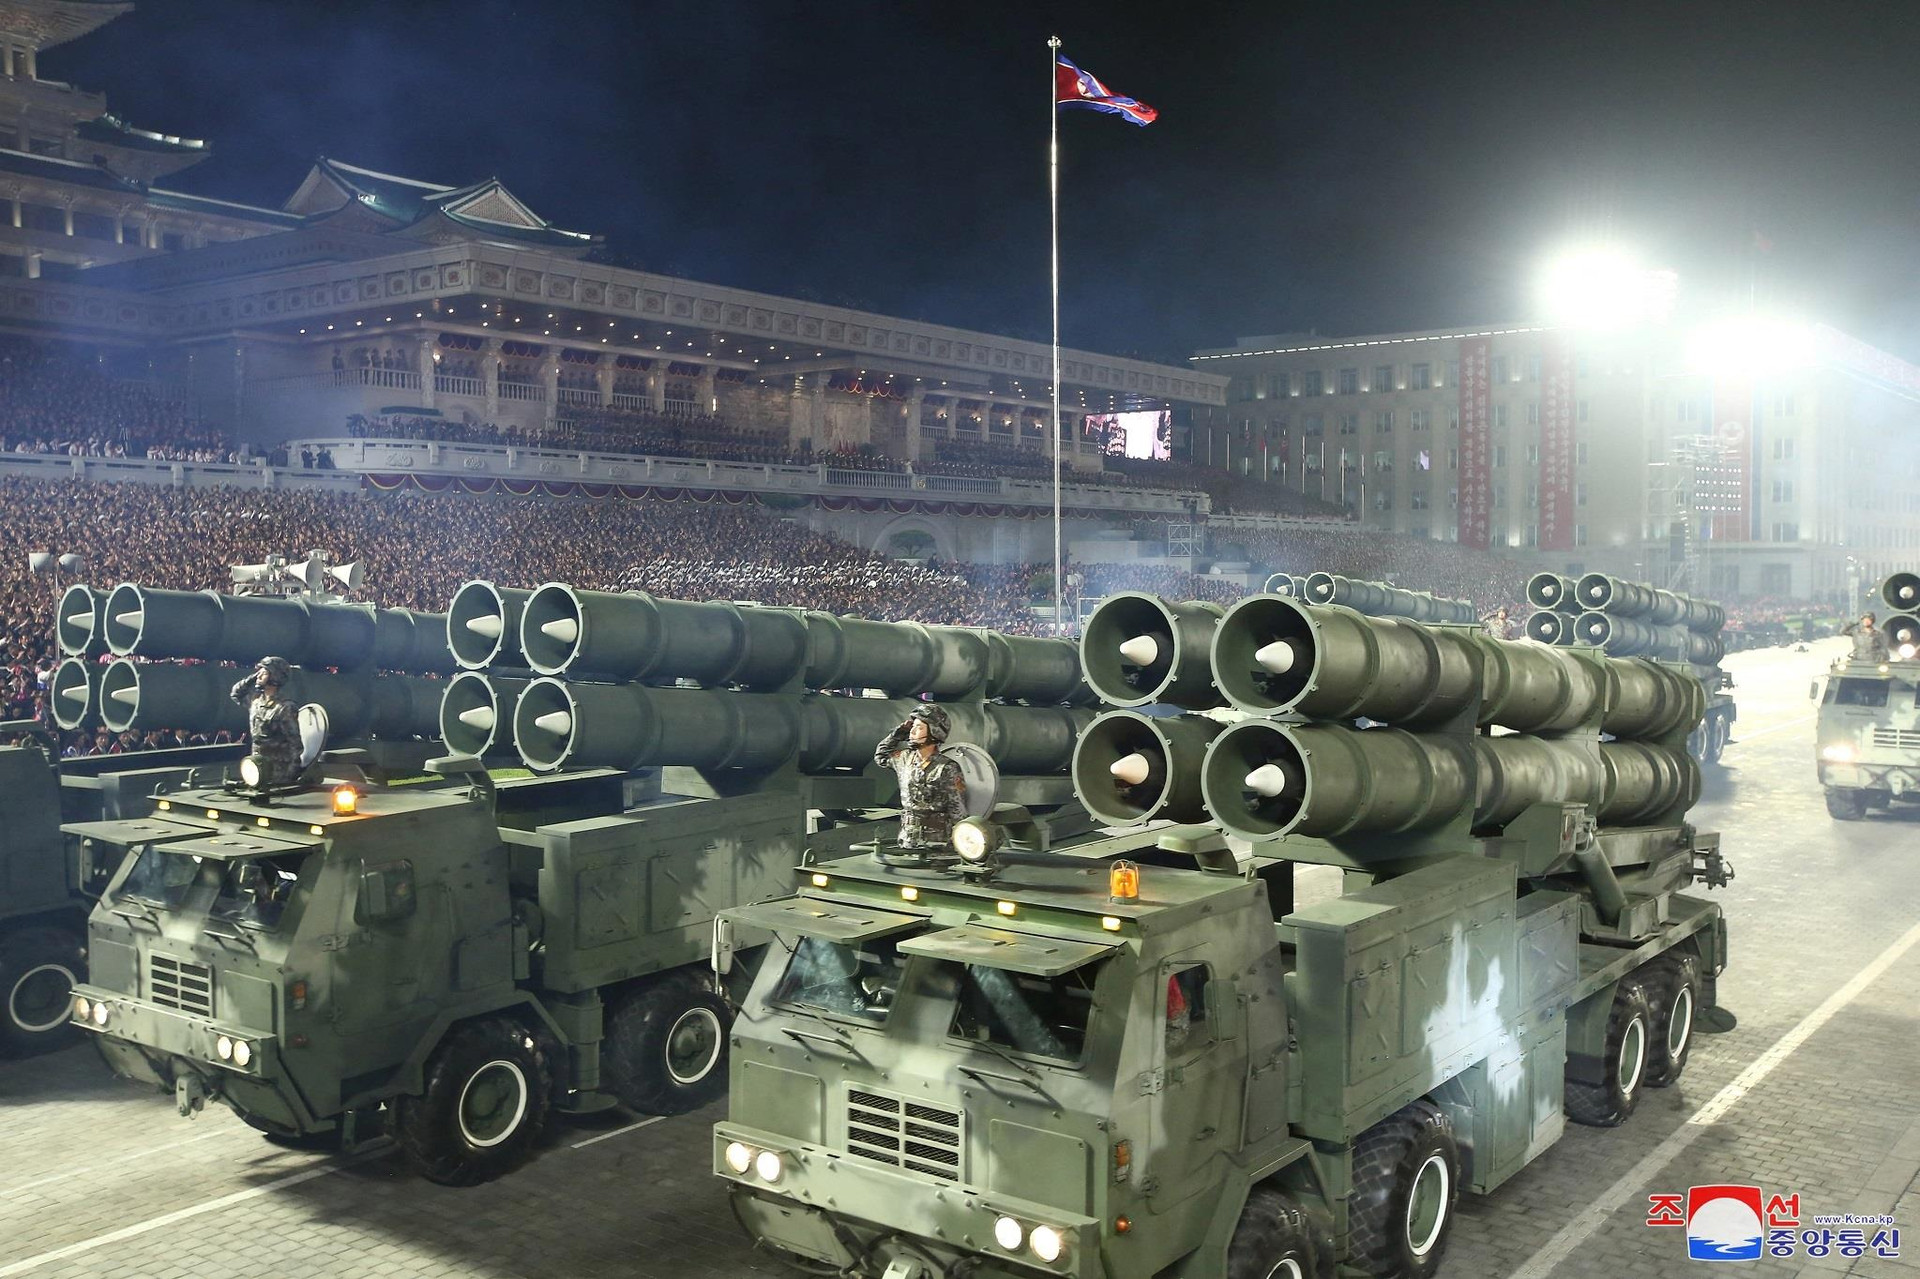 Ảnh: Triều Tiên duyệt binh với dàn tên lửa khổng lồ - 8